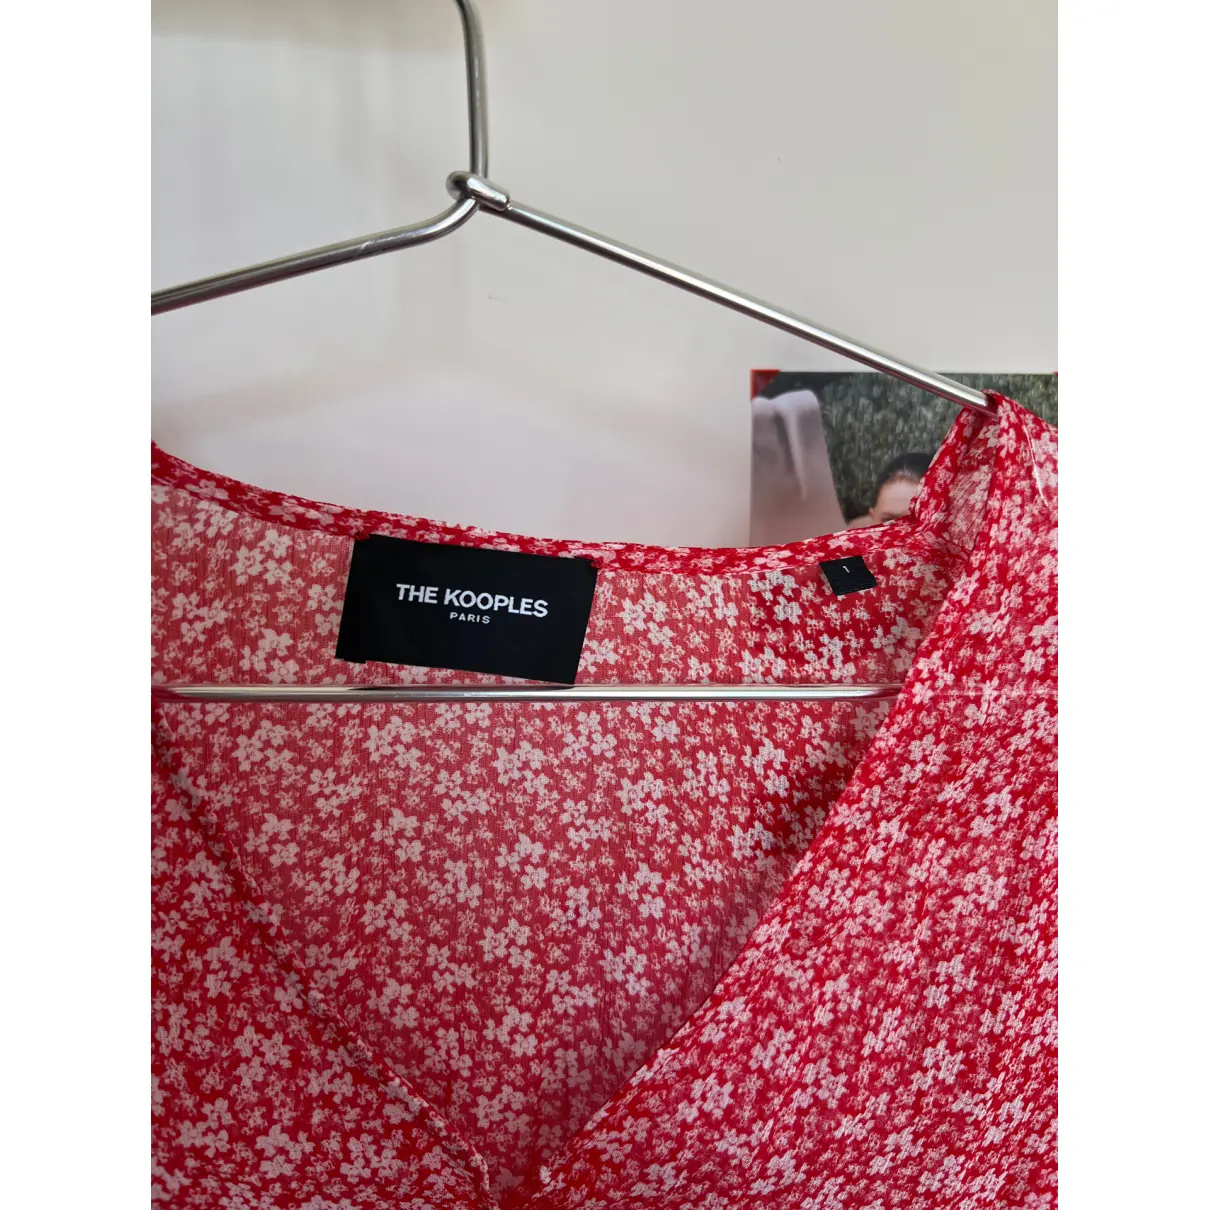 Buy The Kooples Spring Summer 2020 blouse online